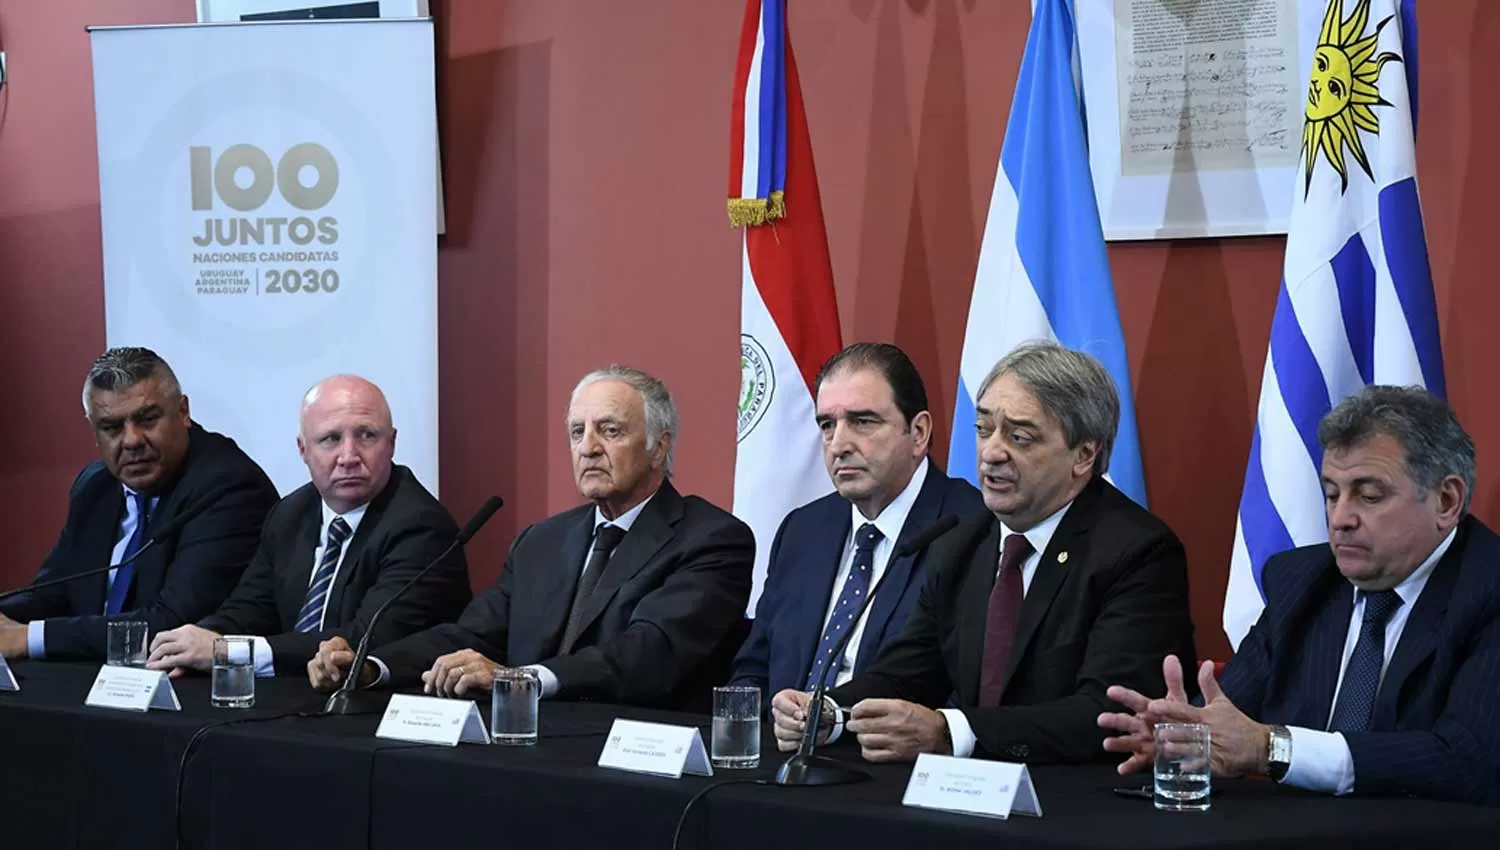 PLANIFICACIÓN DEL MUNDIAL 2030. Claudio Tapia -AFA-, Carlos Mac Allister y Fernando Marín, junto a dirigentes de la federación uruguaya de fútbol. (TÉLAM)